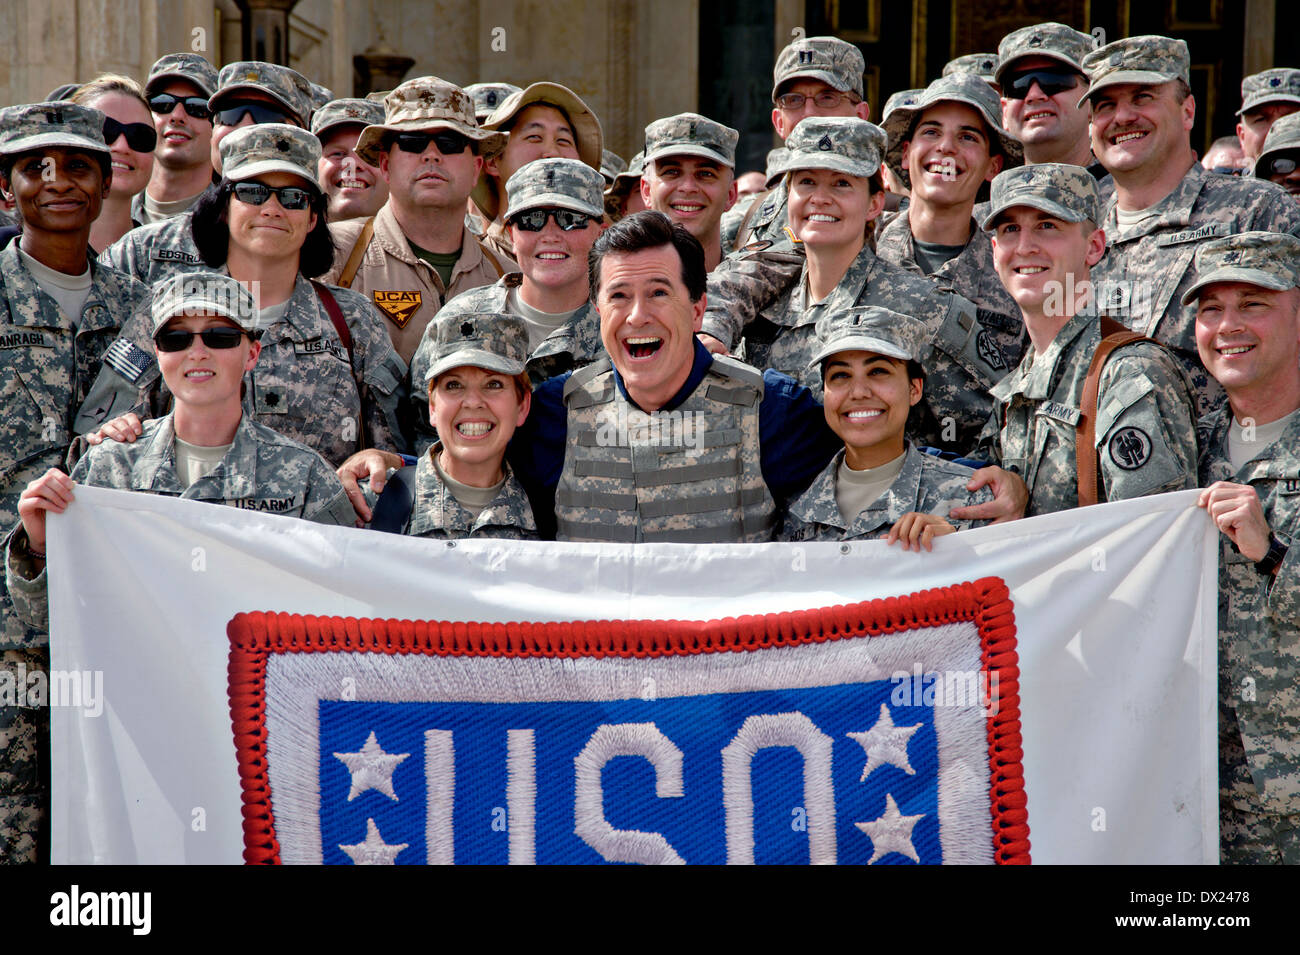 Komiker Stephen Colbert posiert für ein Foto mit Soldat innen während seiner USO Tour im Camp Victory Al Faw Palace 5. Juni 2009 in Bagdad, Irak. Stockfoto